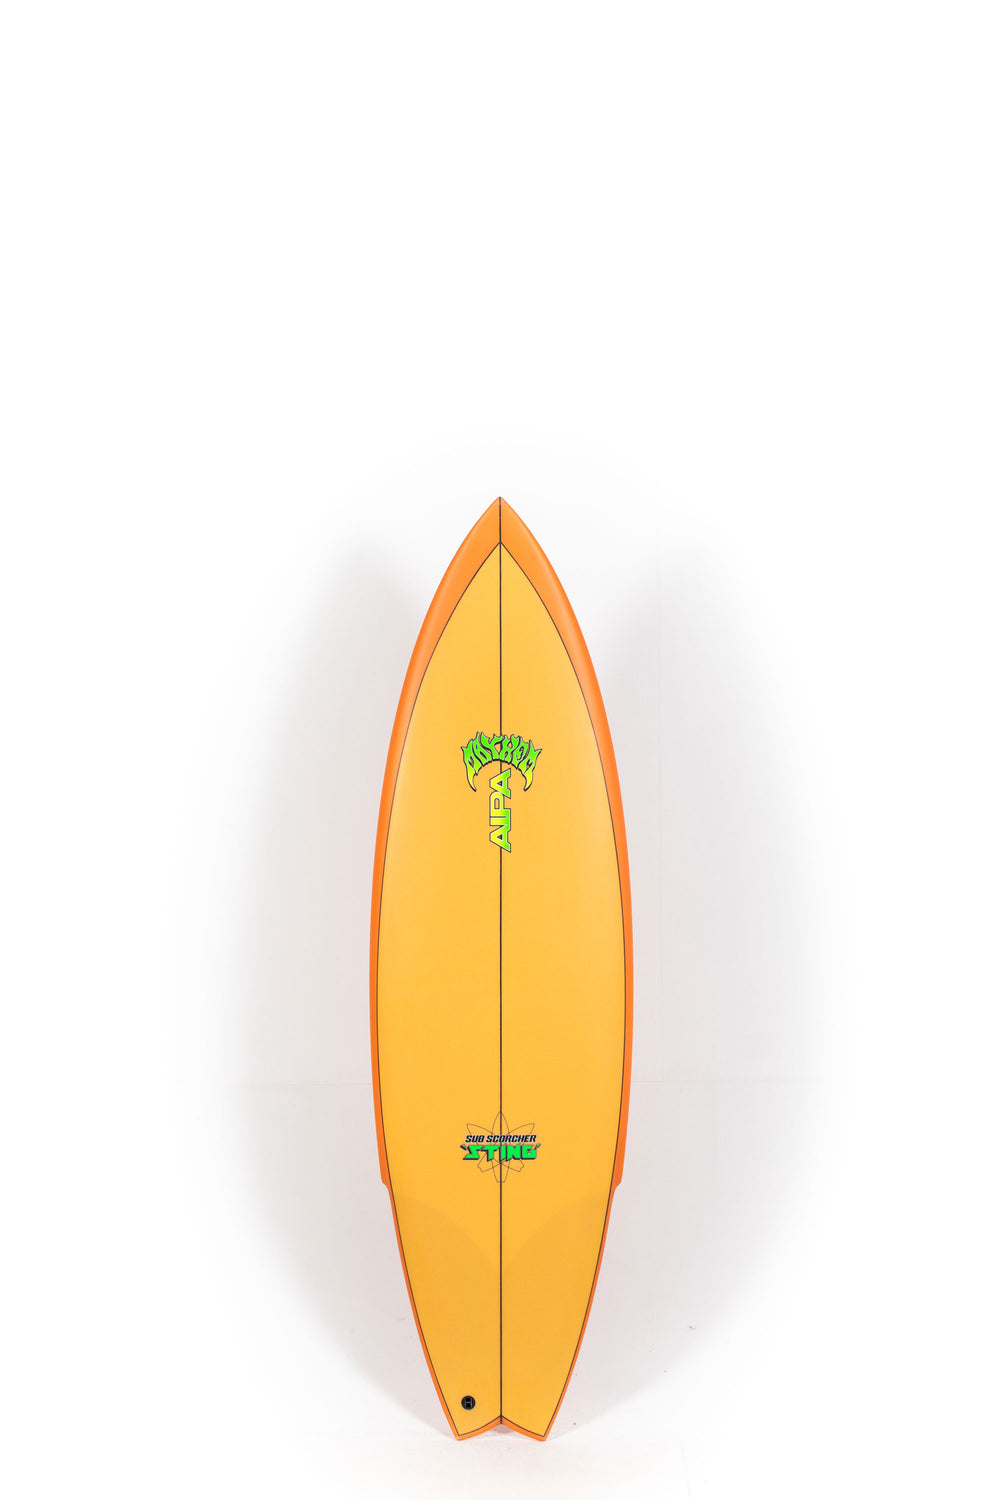 Lost Surfboard - SUB SCORCHER STING by Mayhem x Brink - 5'9” x 19